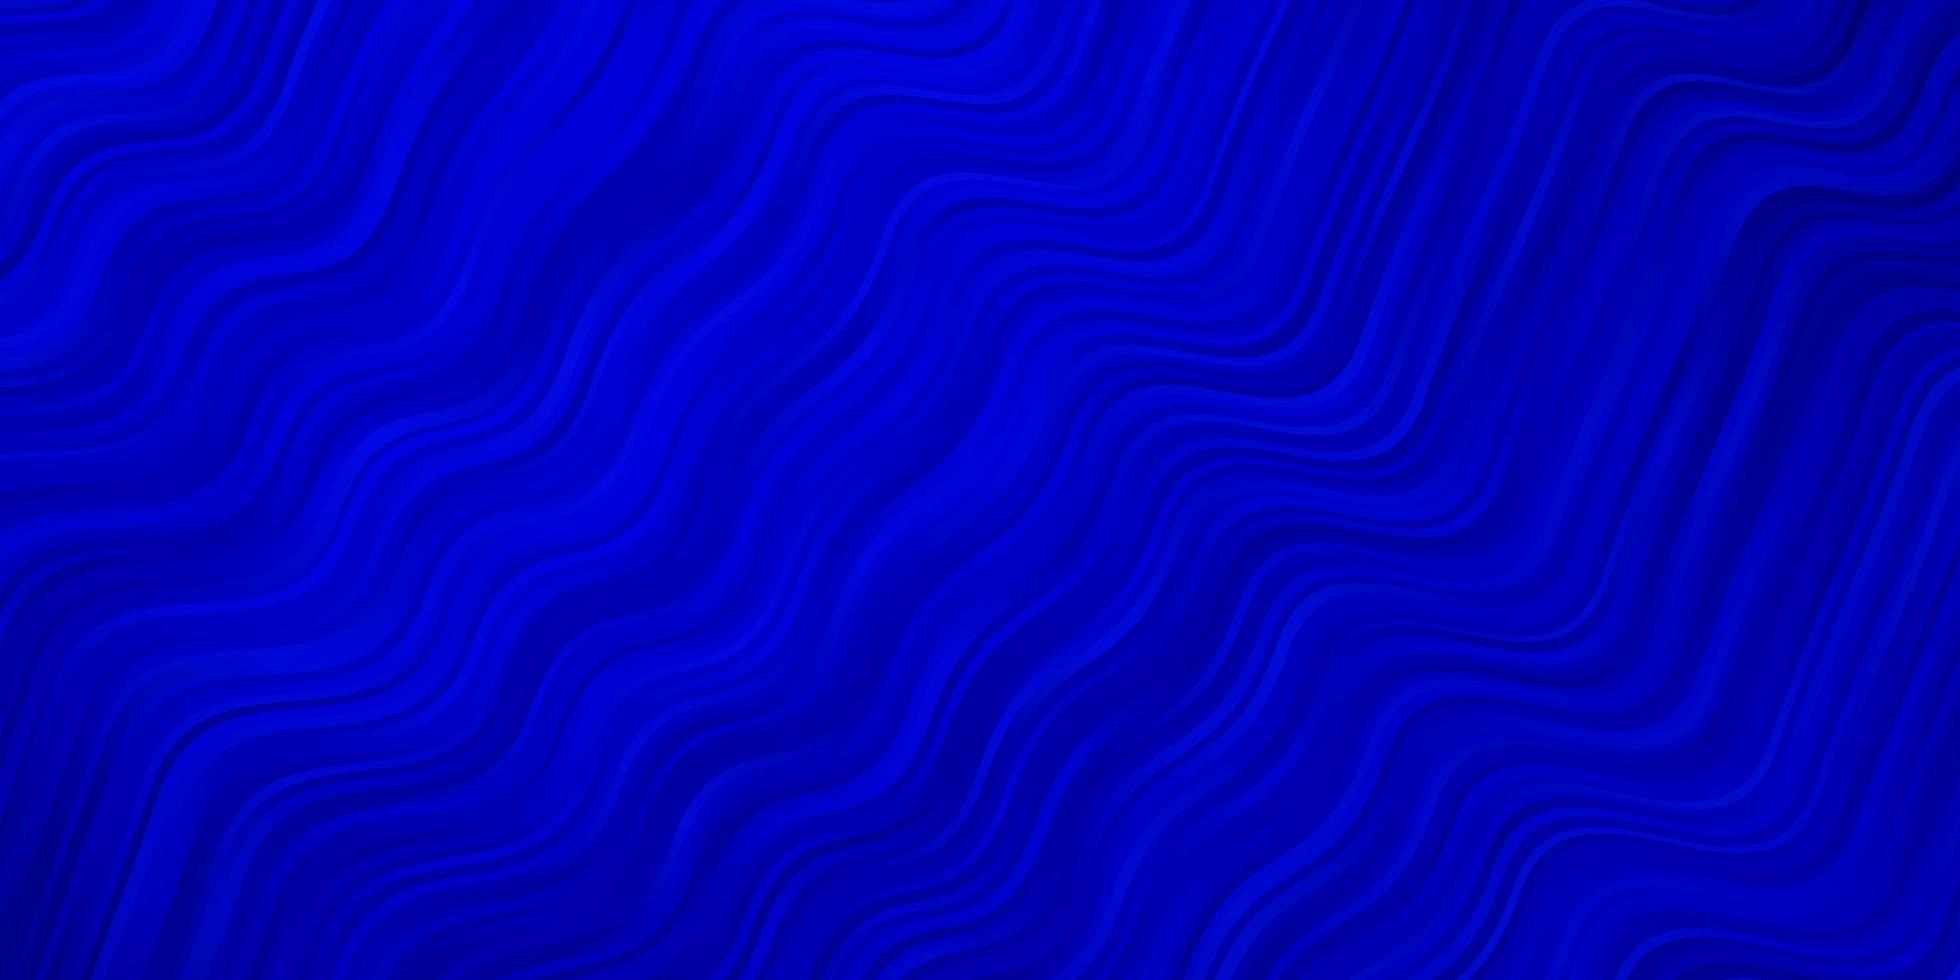 fundo vector azul escuro com curvas, nova ilustração colorida com linhas dobradas, design inteligente para as suas promoções